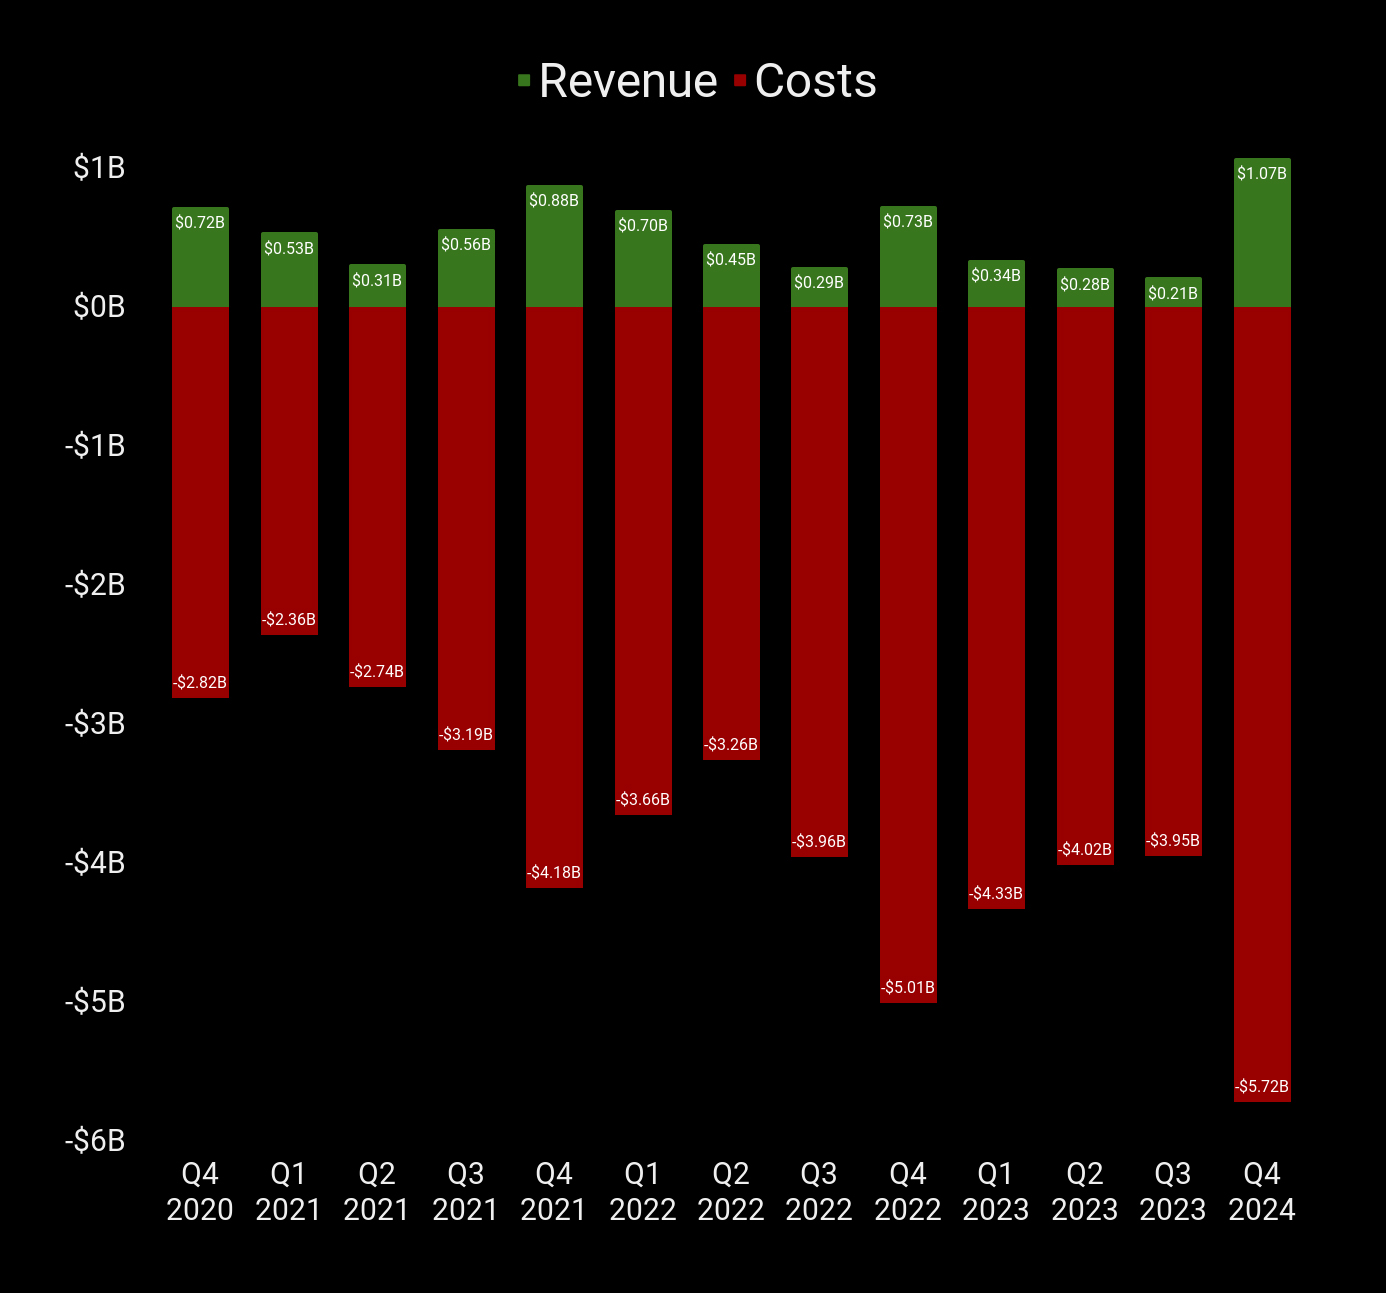 Quest 3 贡献了有史以来最高的季度收入，同时成本也创纪录